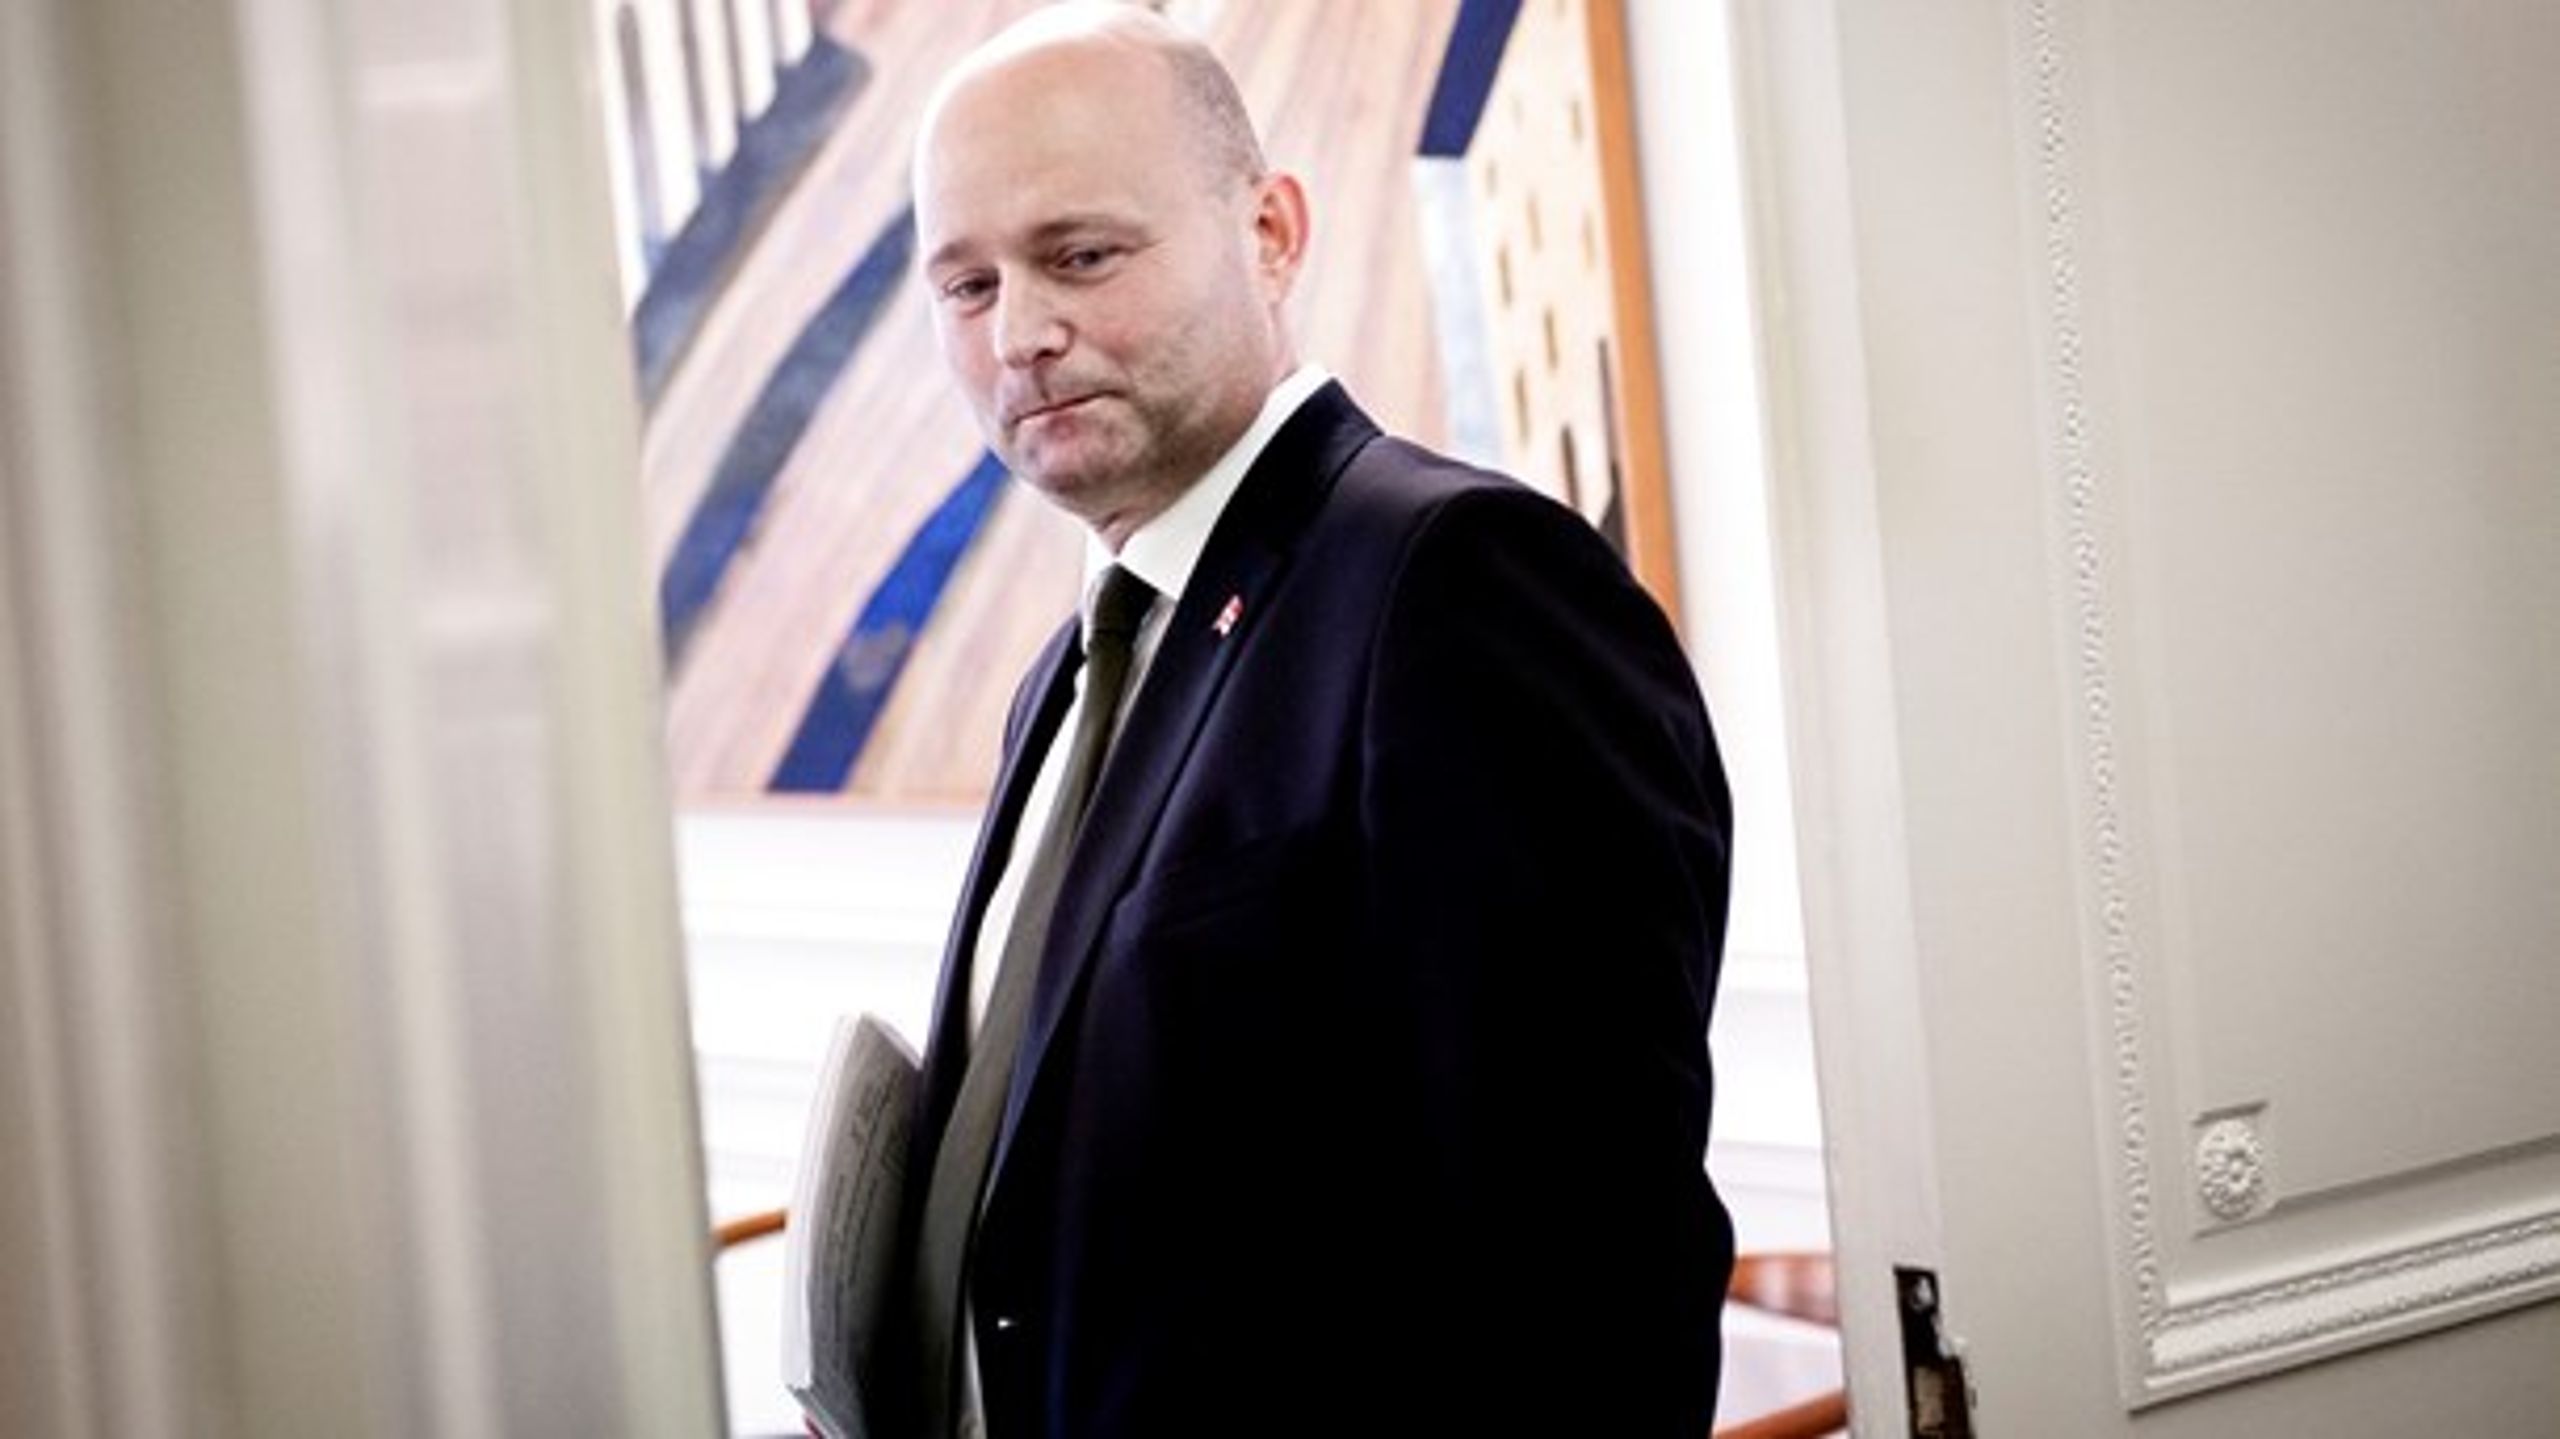 Selvom den konservative leder, Søren Pape (K), ifølge flere mandatprognoser inden valget i 2015 stod til at ryge ud, blev han valgt med en endda ret fin margin, skriver Benny Damsgaard.